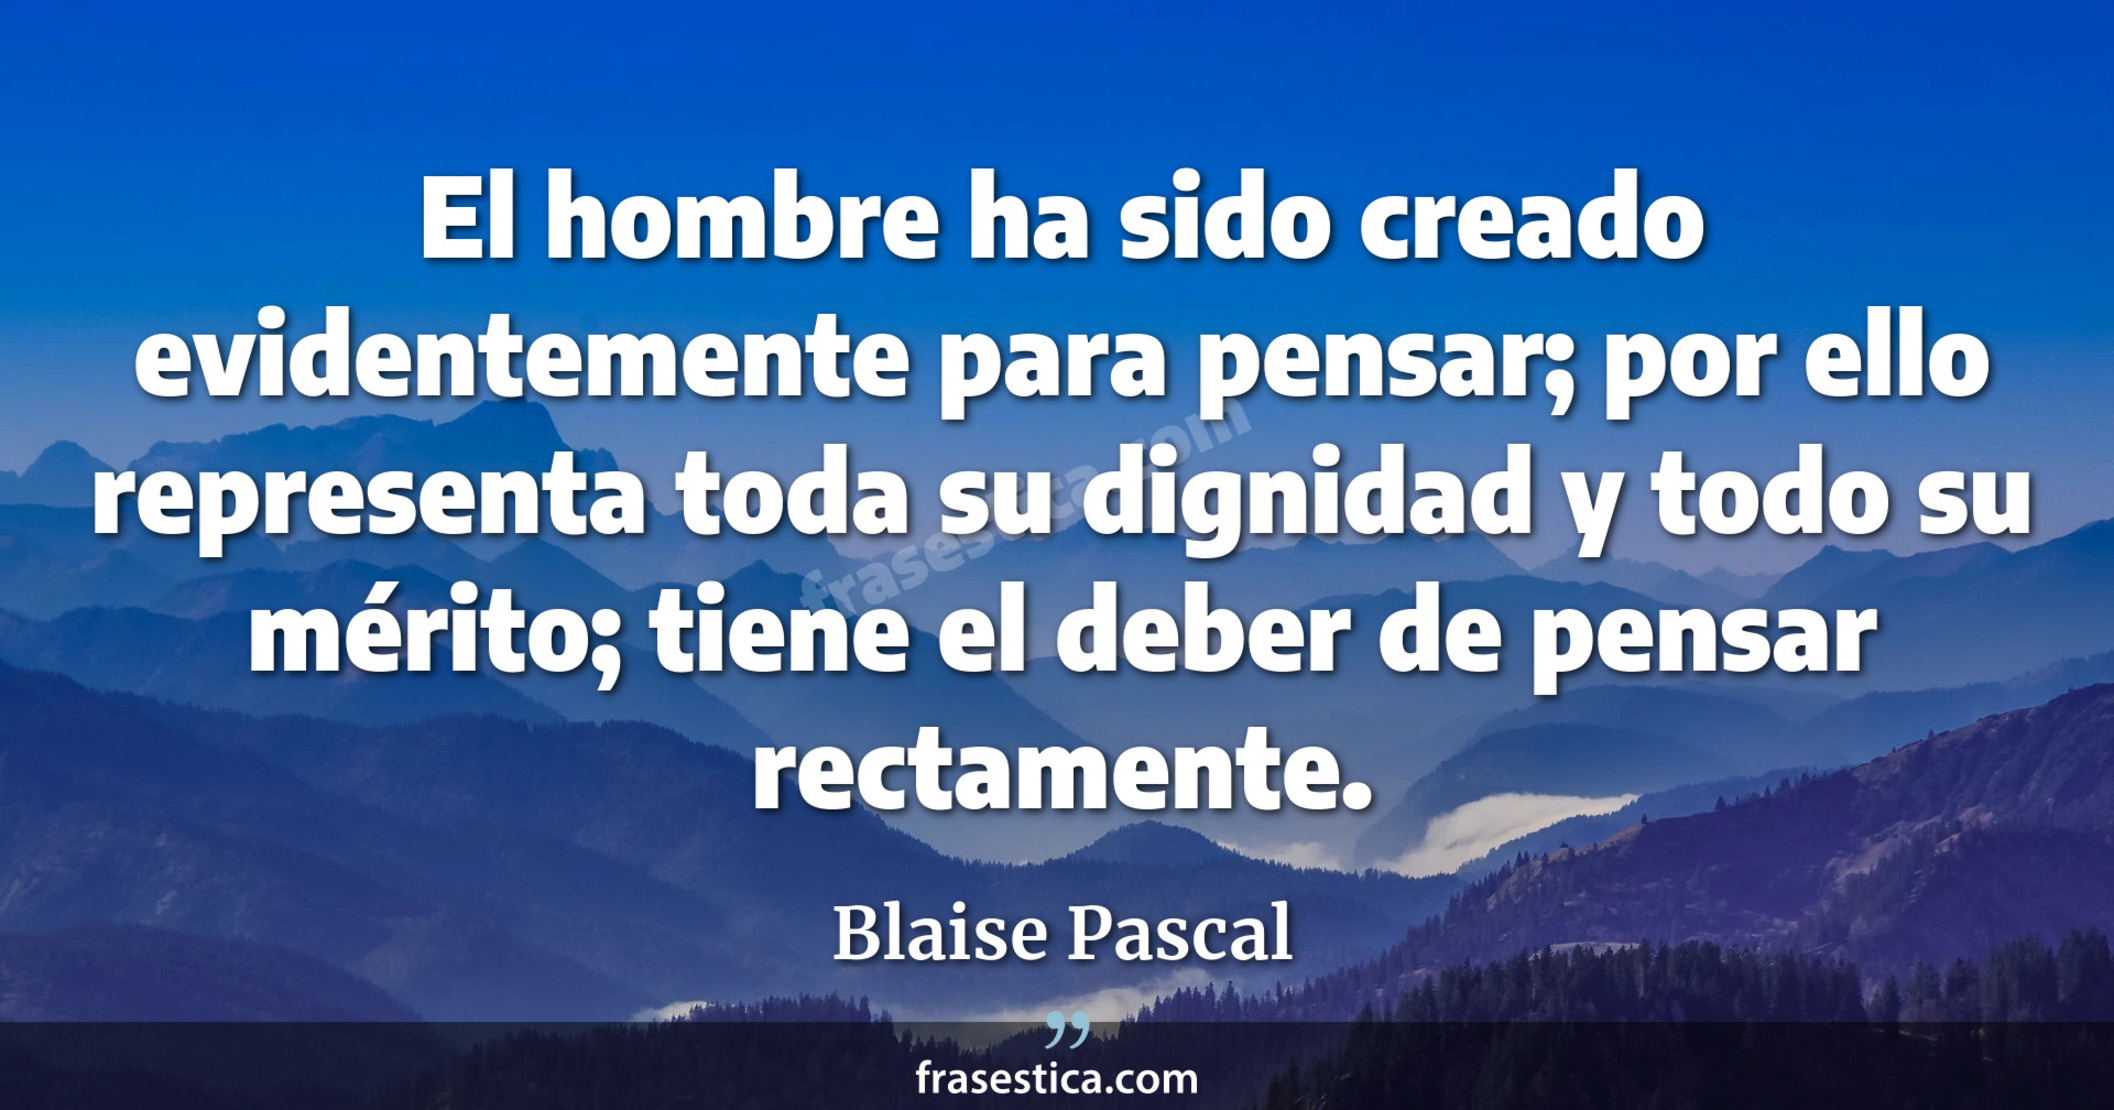 El hombre ha sido creado evidentemente para pensar; por ello representa toda su dignidad y todo su mérito; tiene el deber de pensar rectamente. - Blaise Pascal